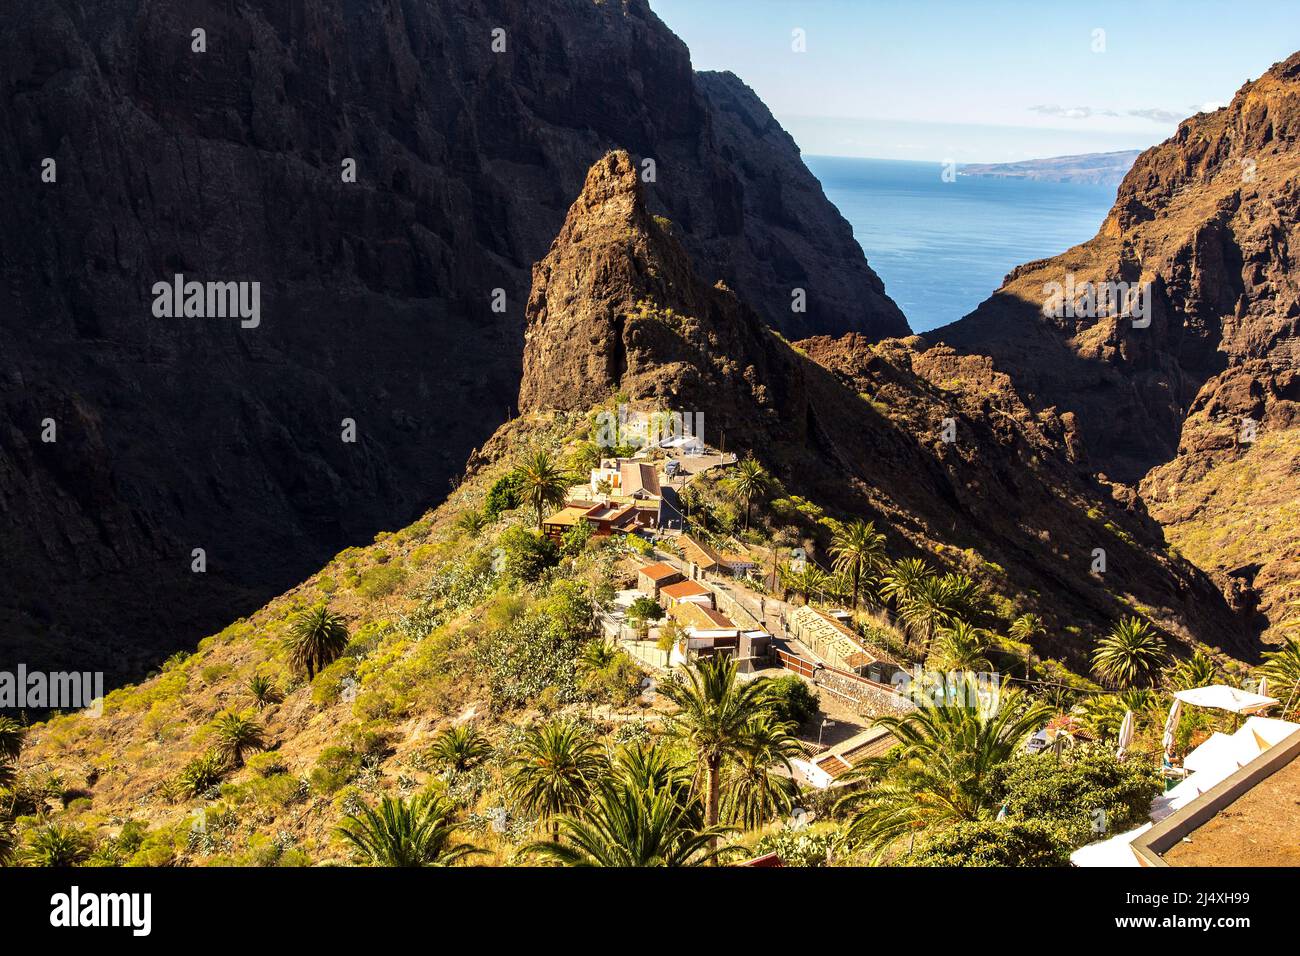 Die schöne Aussicht auf das berühmte Dorf Masca. Teneriffa, Kanarische Inseln, Spanien. Stockfoto